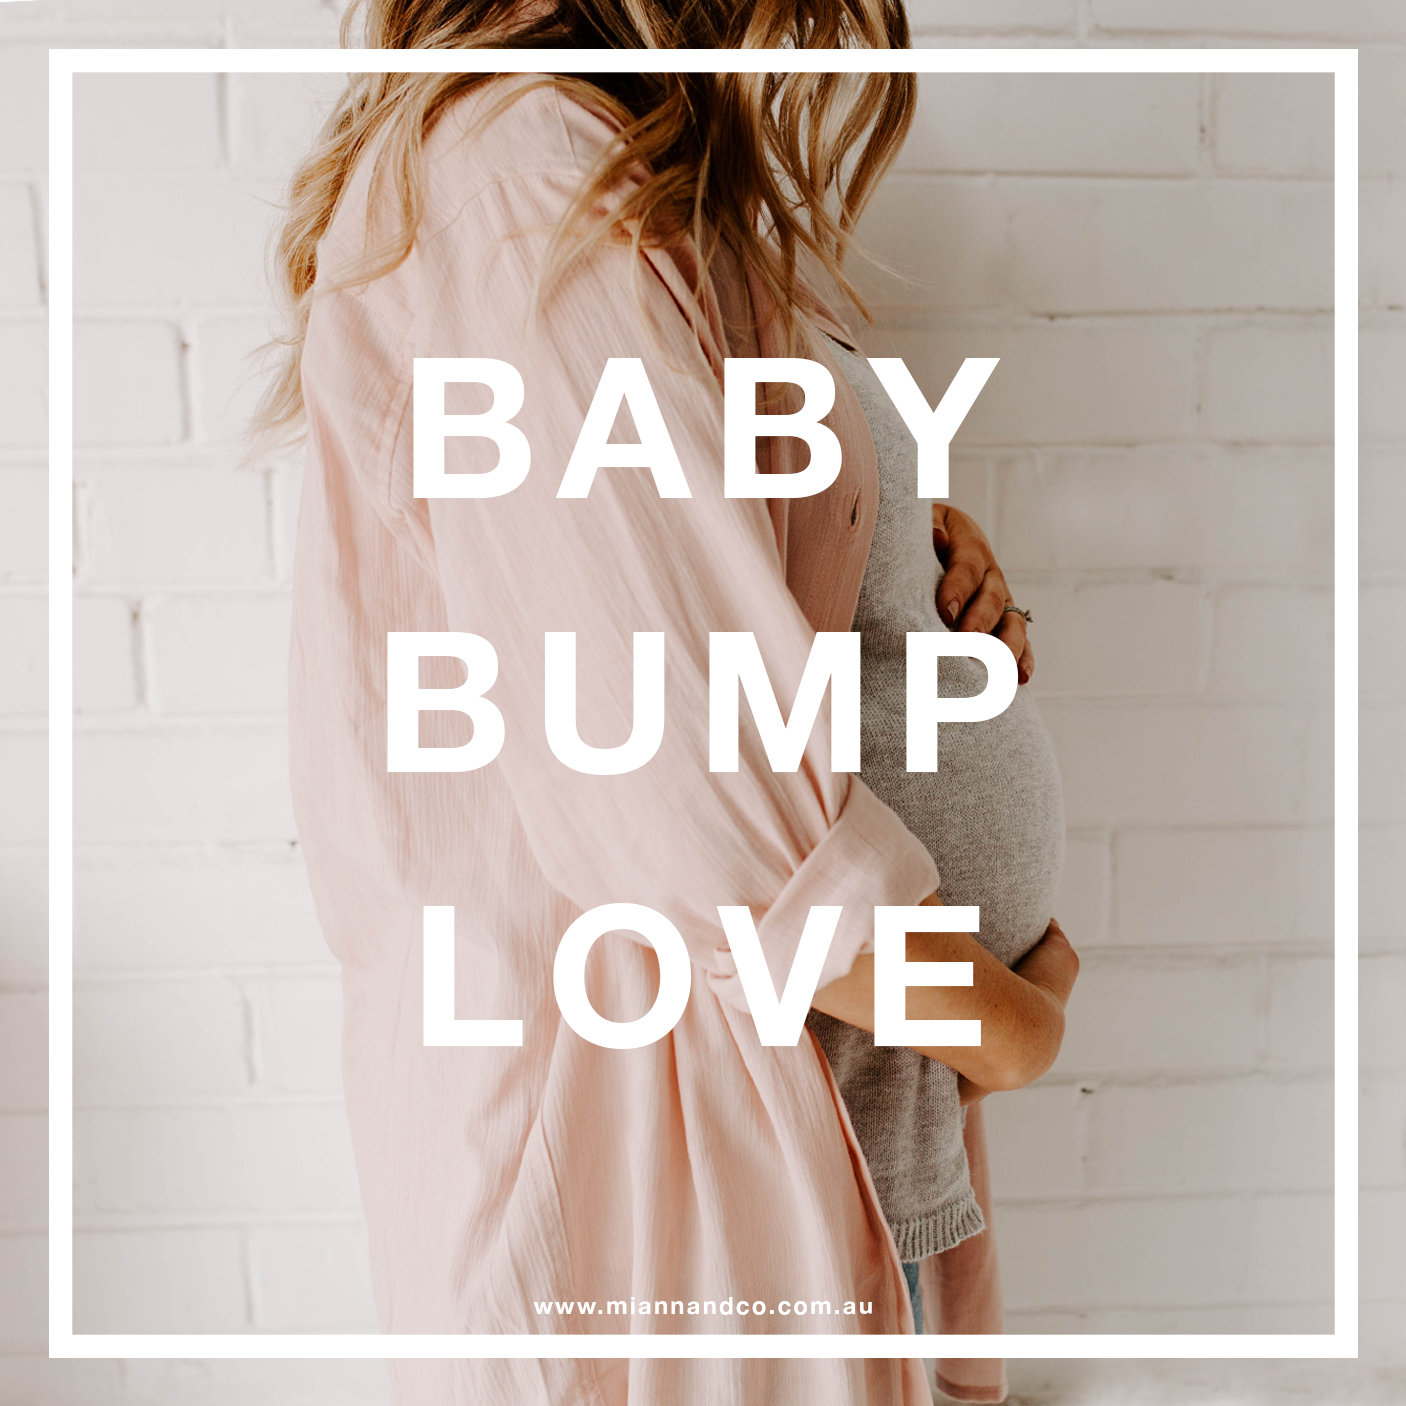 BABY BUMP LOVE